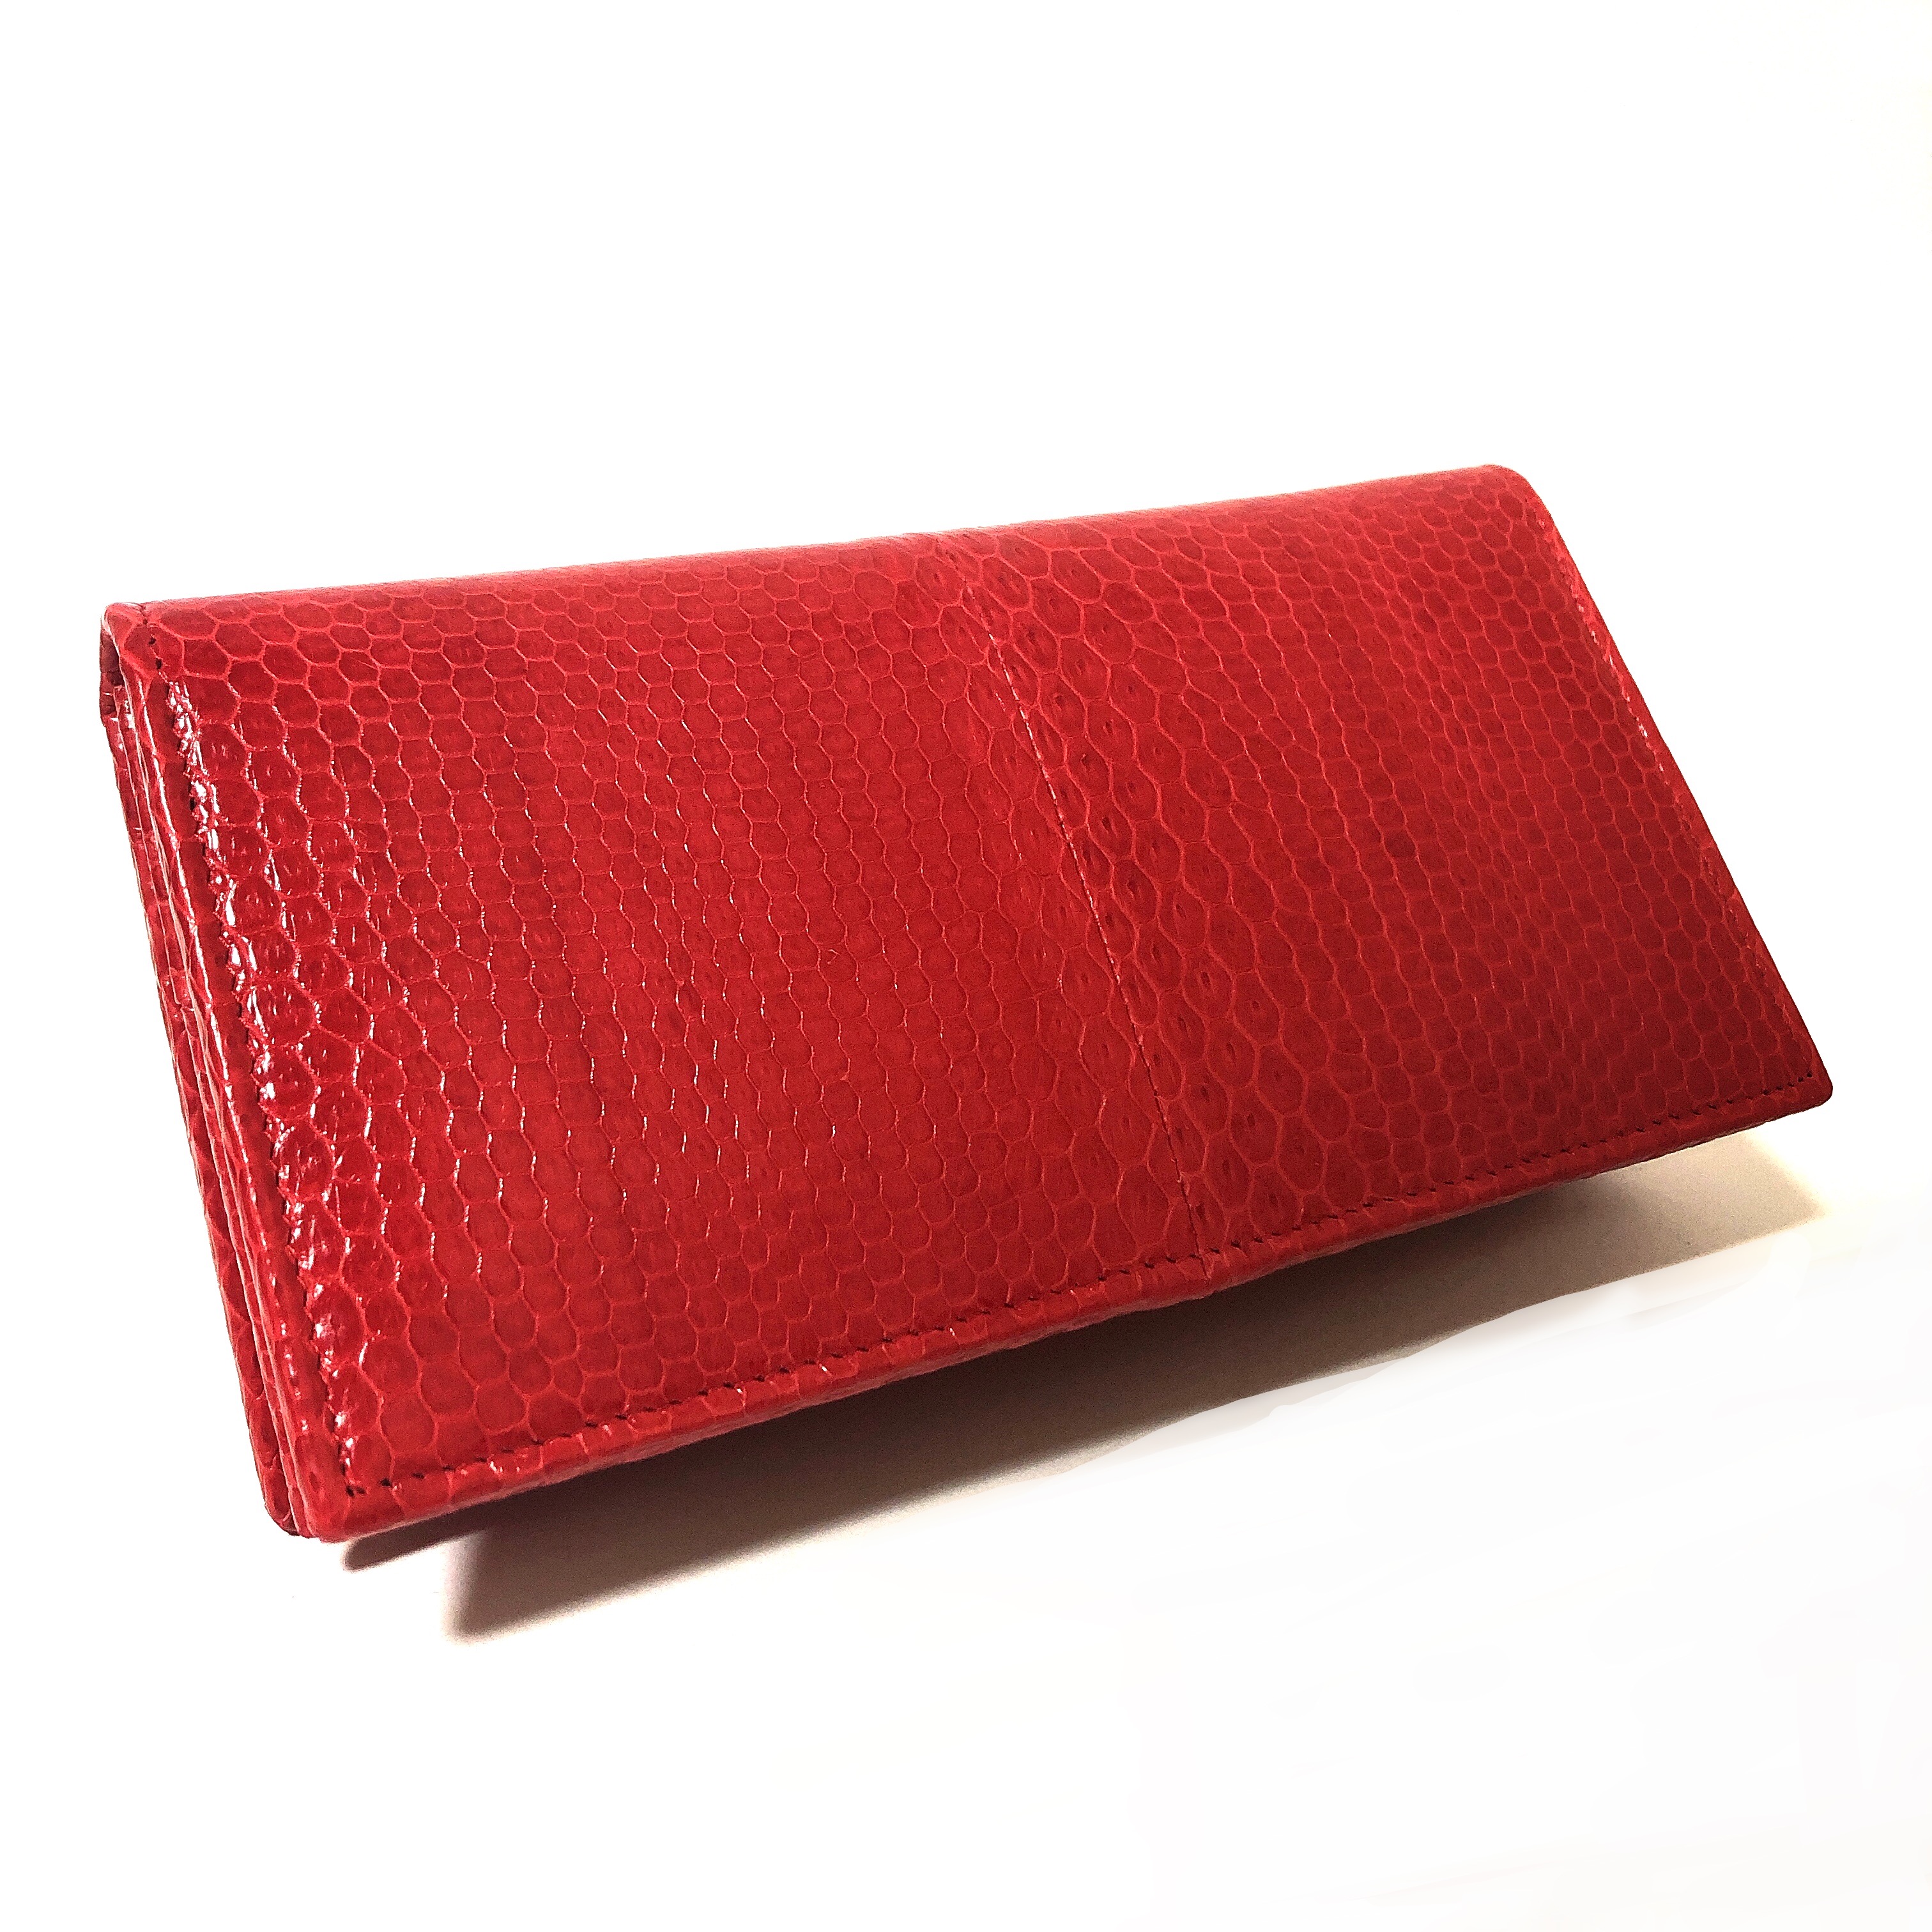 GYPS FLATオリジナル財布、珍しいウミヘビの二つ折り長財布。